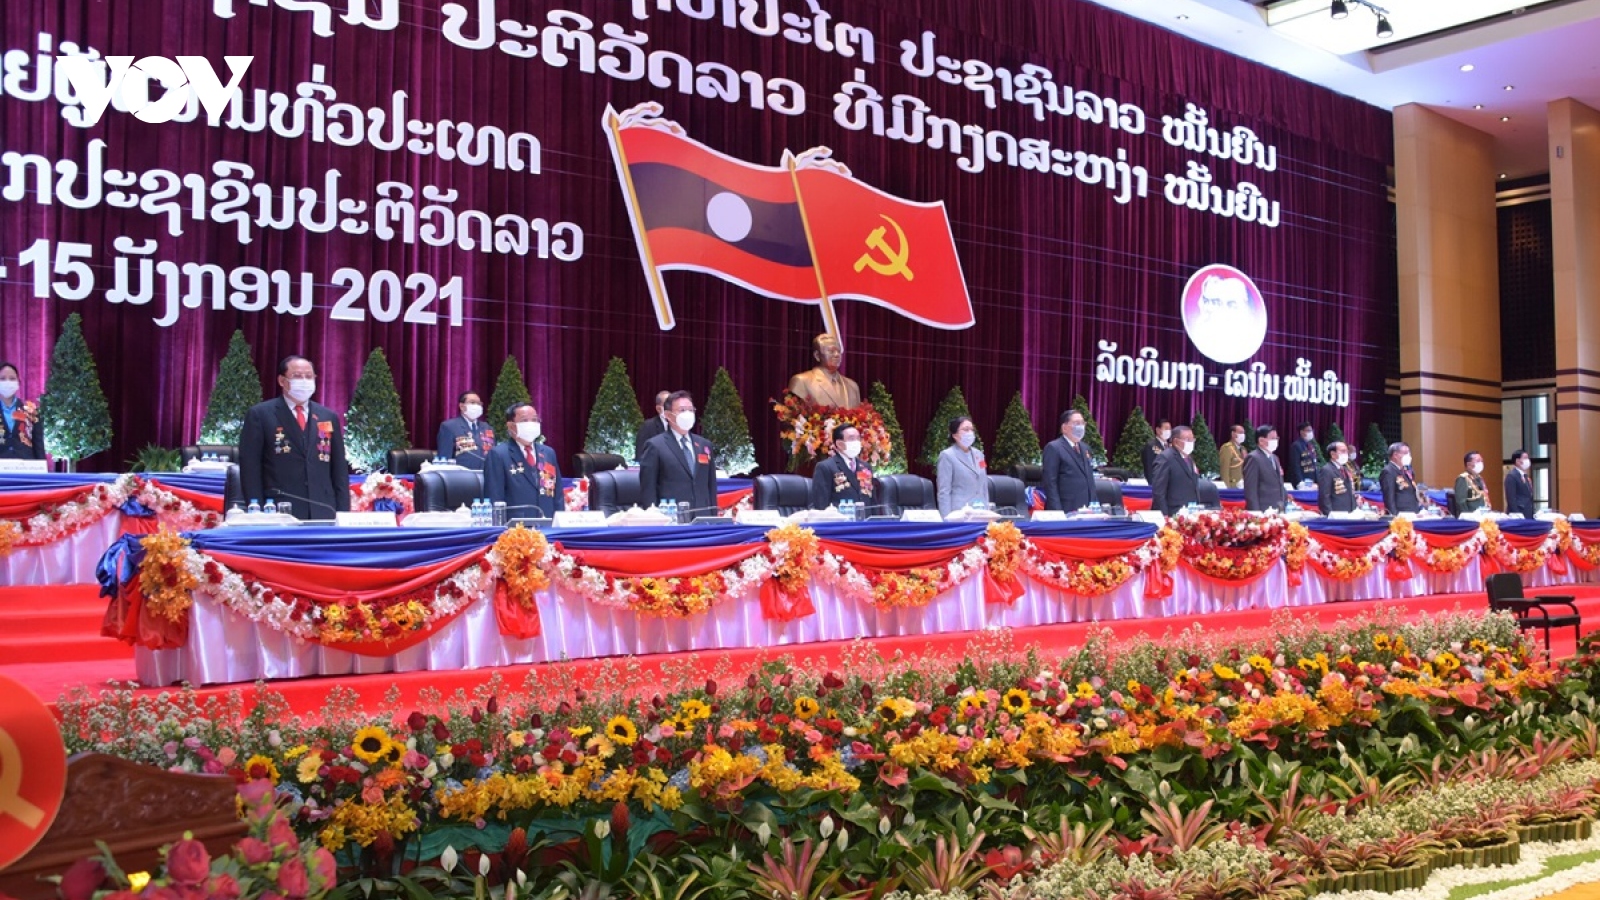 Khai mạc Đại hội đại biểu toàn quốc lần thứ XI Đảng Nhân dân Cách mạng Lào